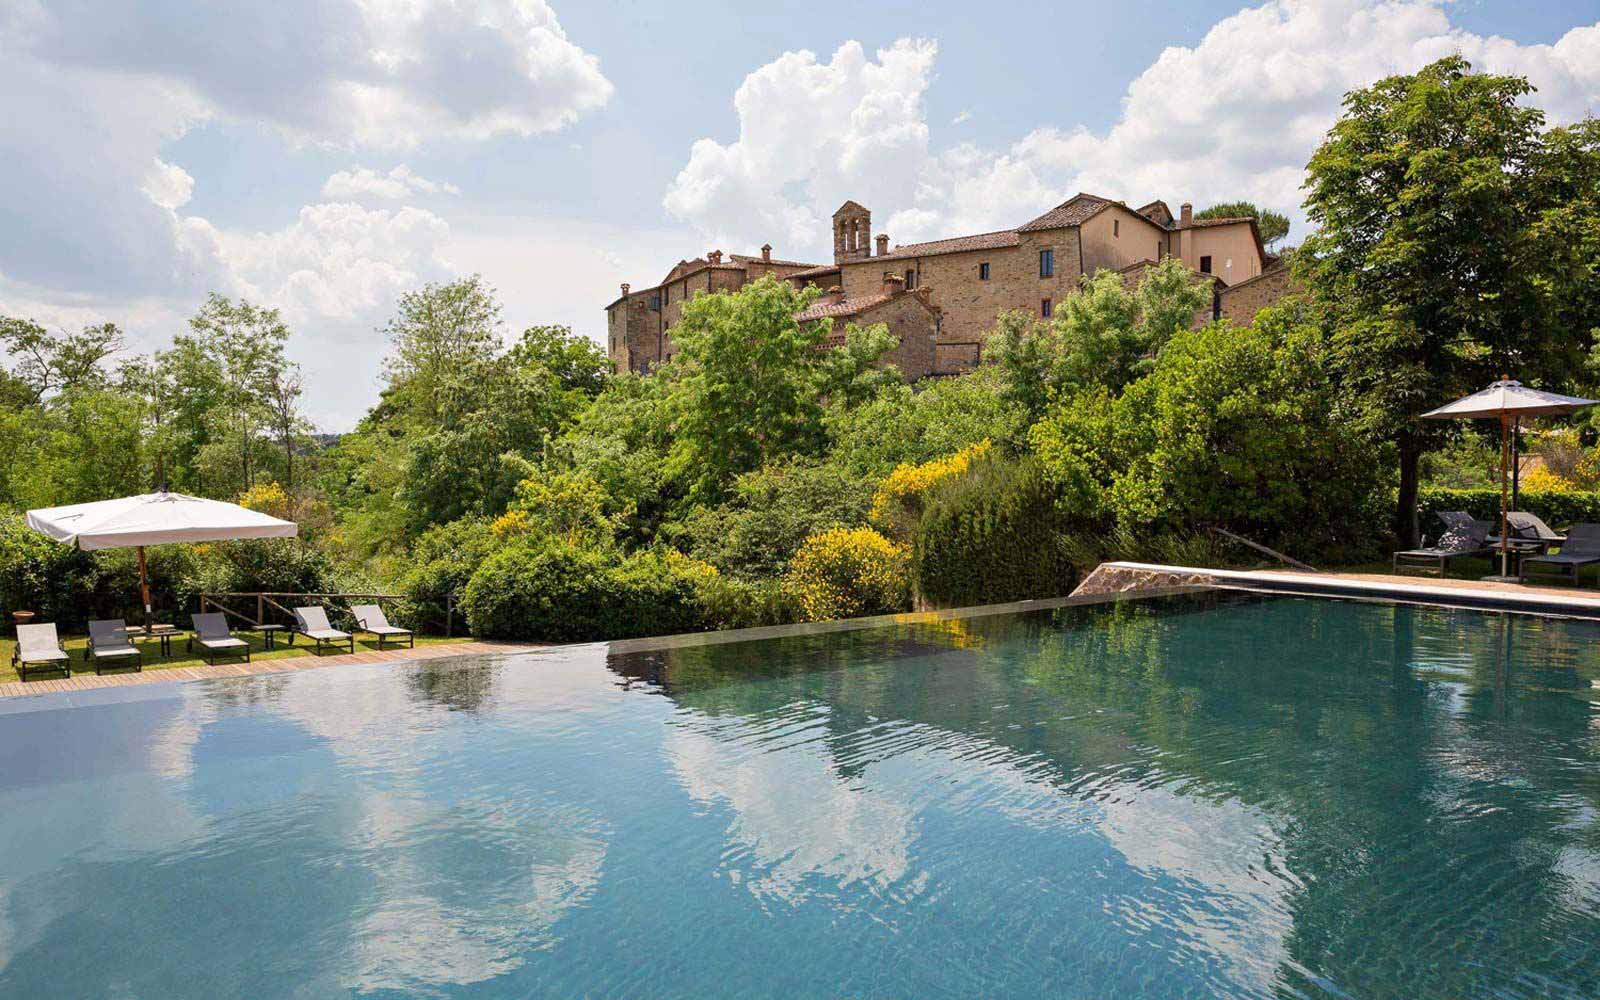 External Pool at Castel Monastero Tuscan Resort & Spa